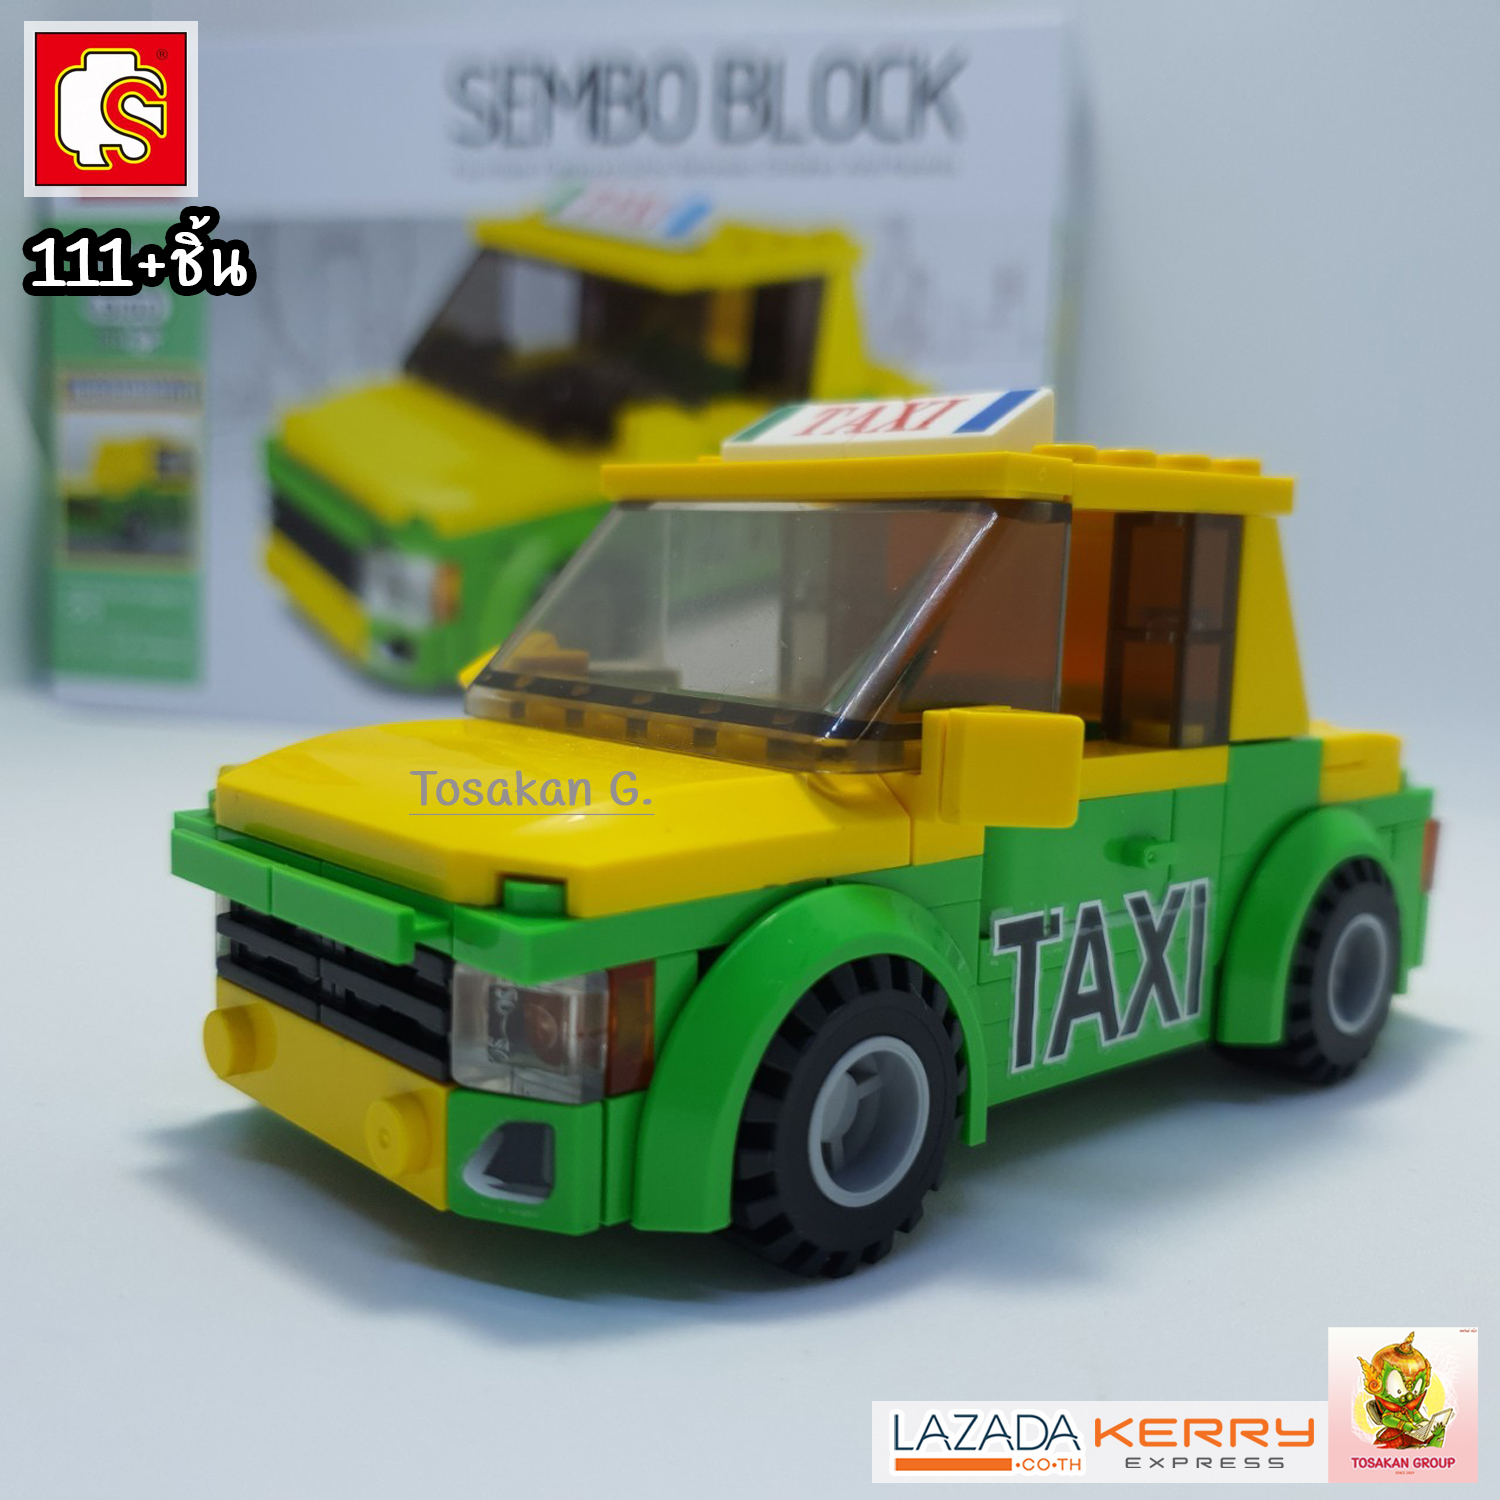 [รถแท๊กซี่] ตัวต่อ ชุดตัวต่อ Sembo Block ยานพาหนะ ไทยสไตล์ ของเล่น ของสะสม ตั้งโชว์ เสริมทักษะ สมาธิ กิจกรรมยามว่างในครอบครัว (สินค้าพร้อมส่ง)